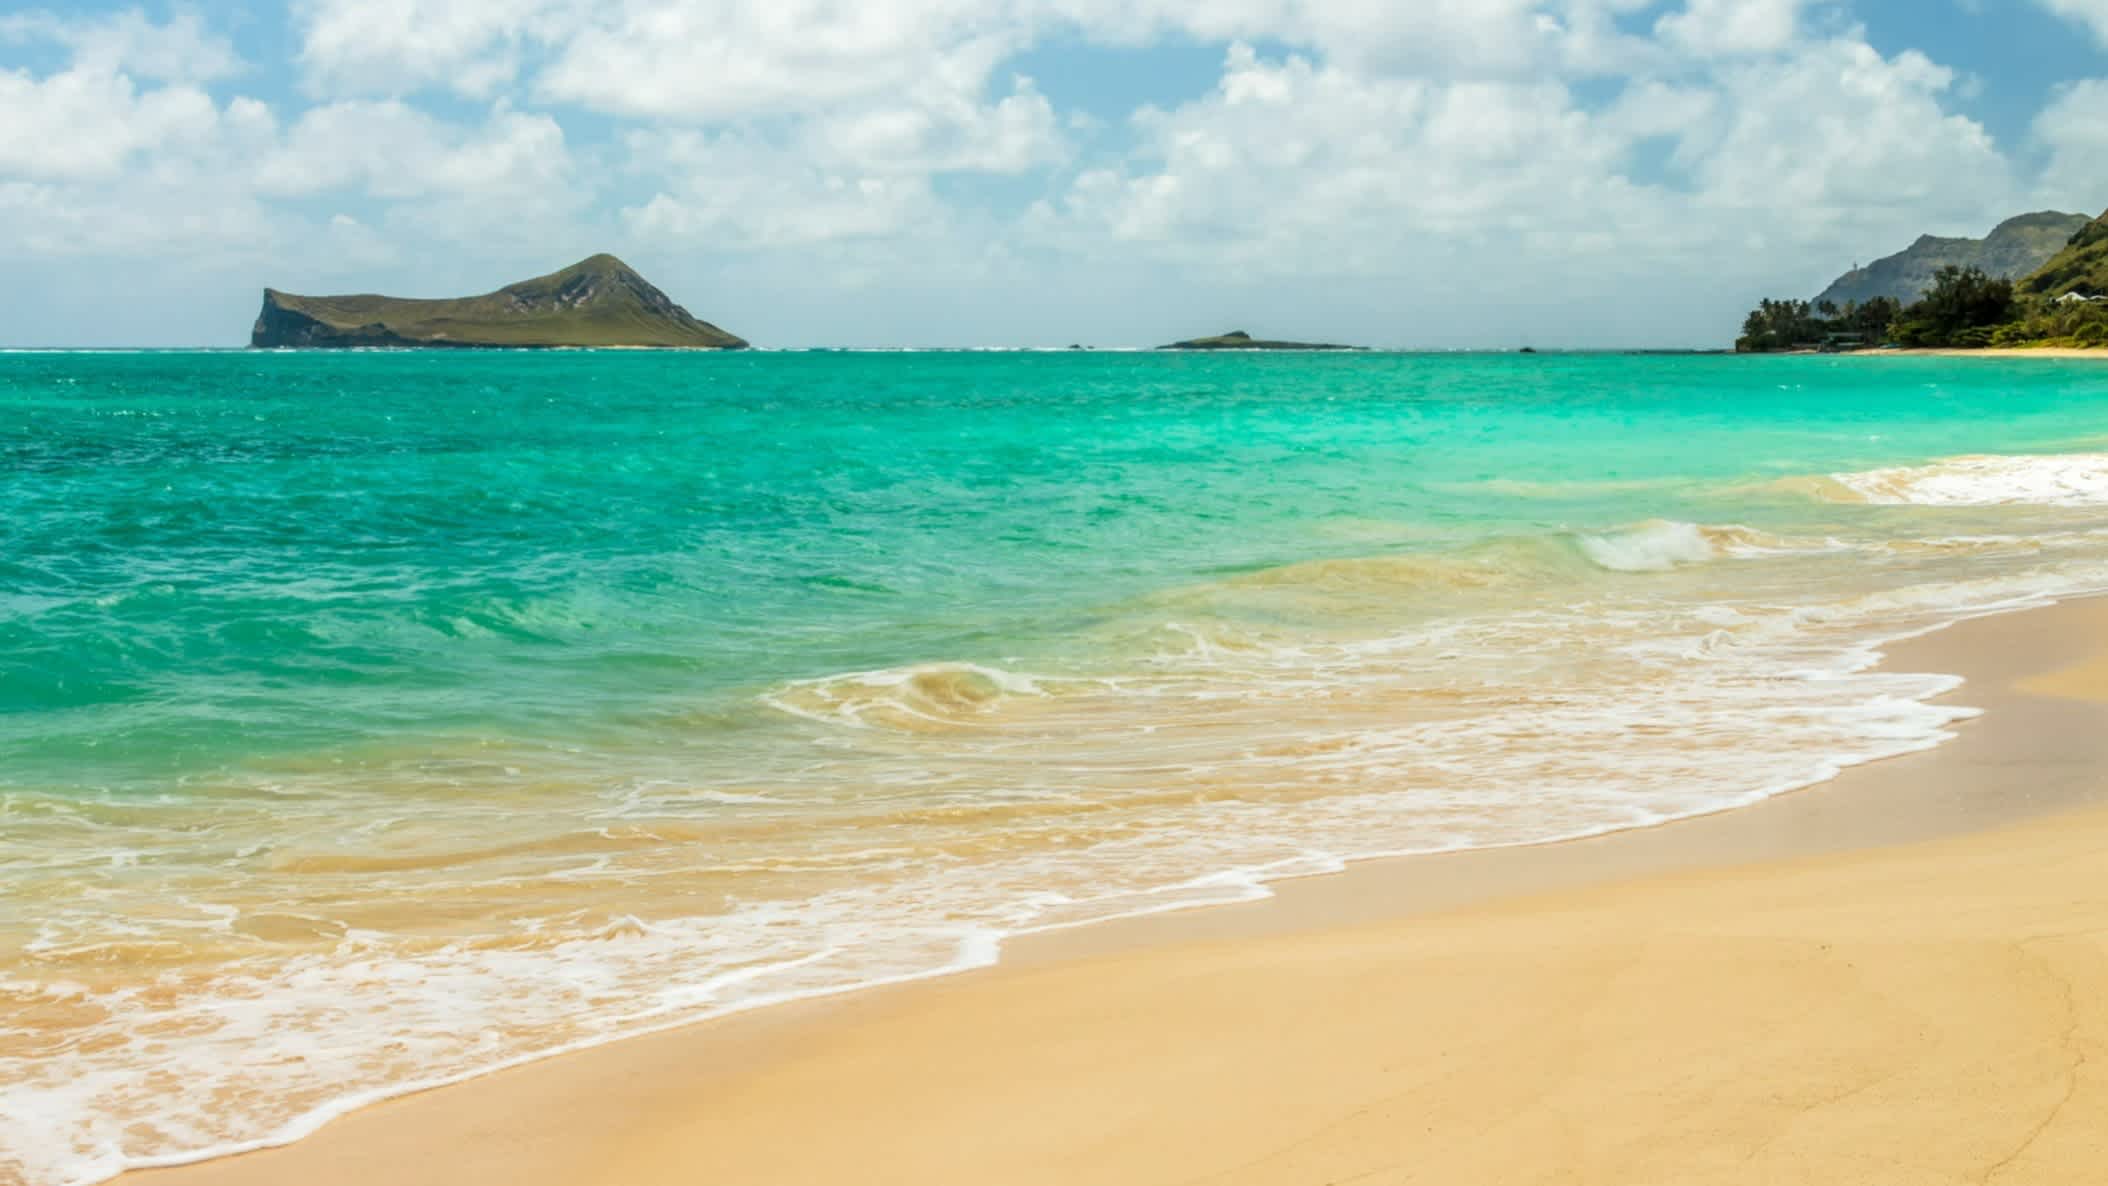 Der Strand Waimanalo Bay, Oahu, Hawaii, USA bei klarem Wetter und mit Blick auf das türkise Meer sowie einer vorgelagerten Insel in der Bucht.